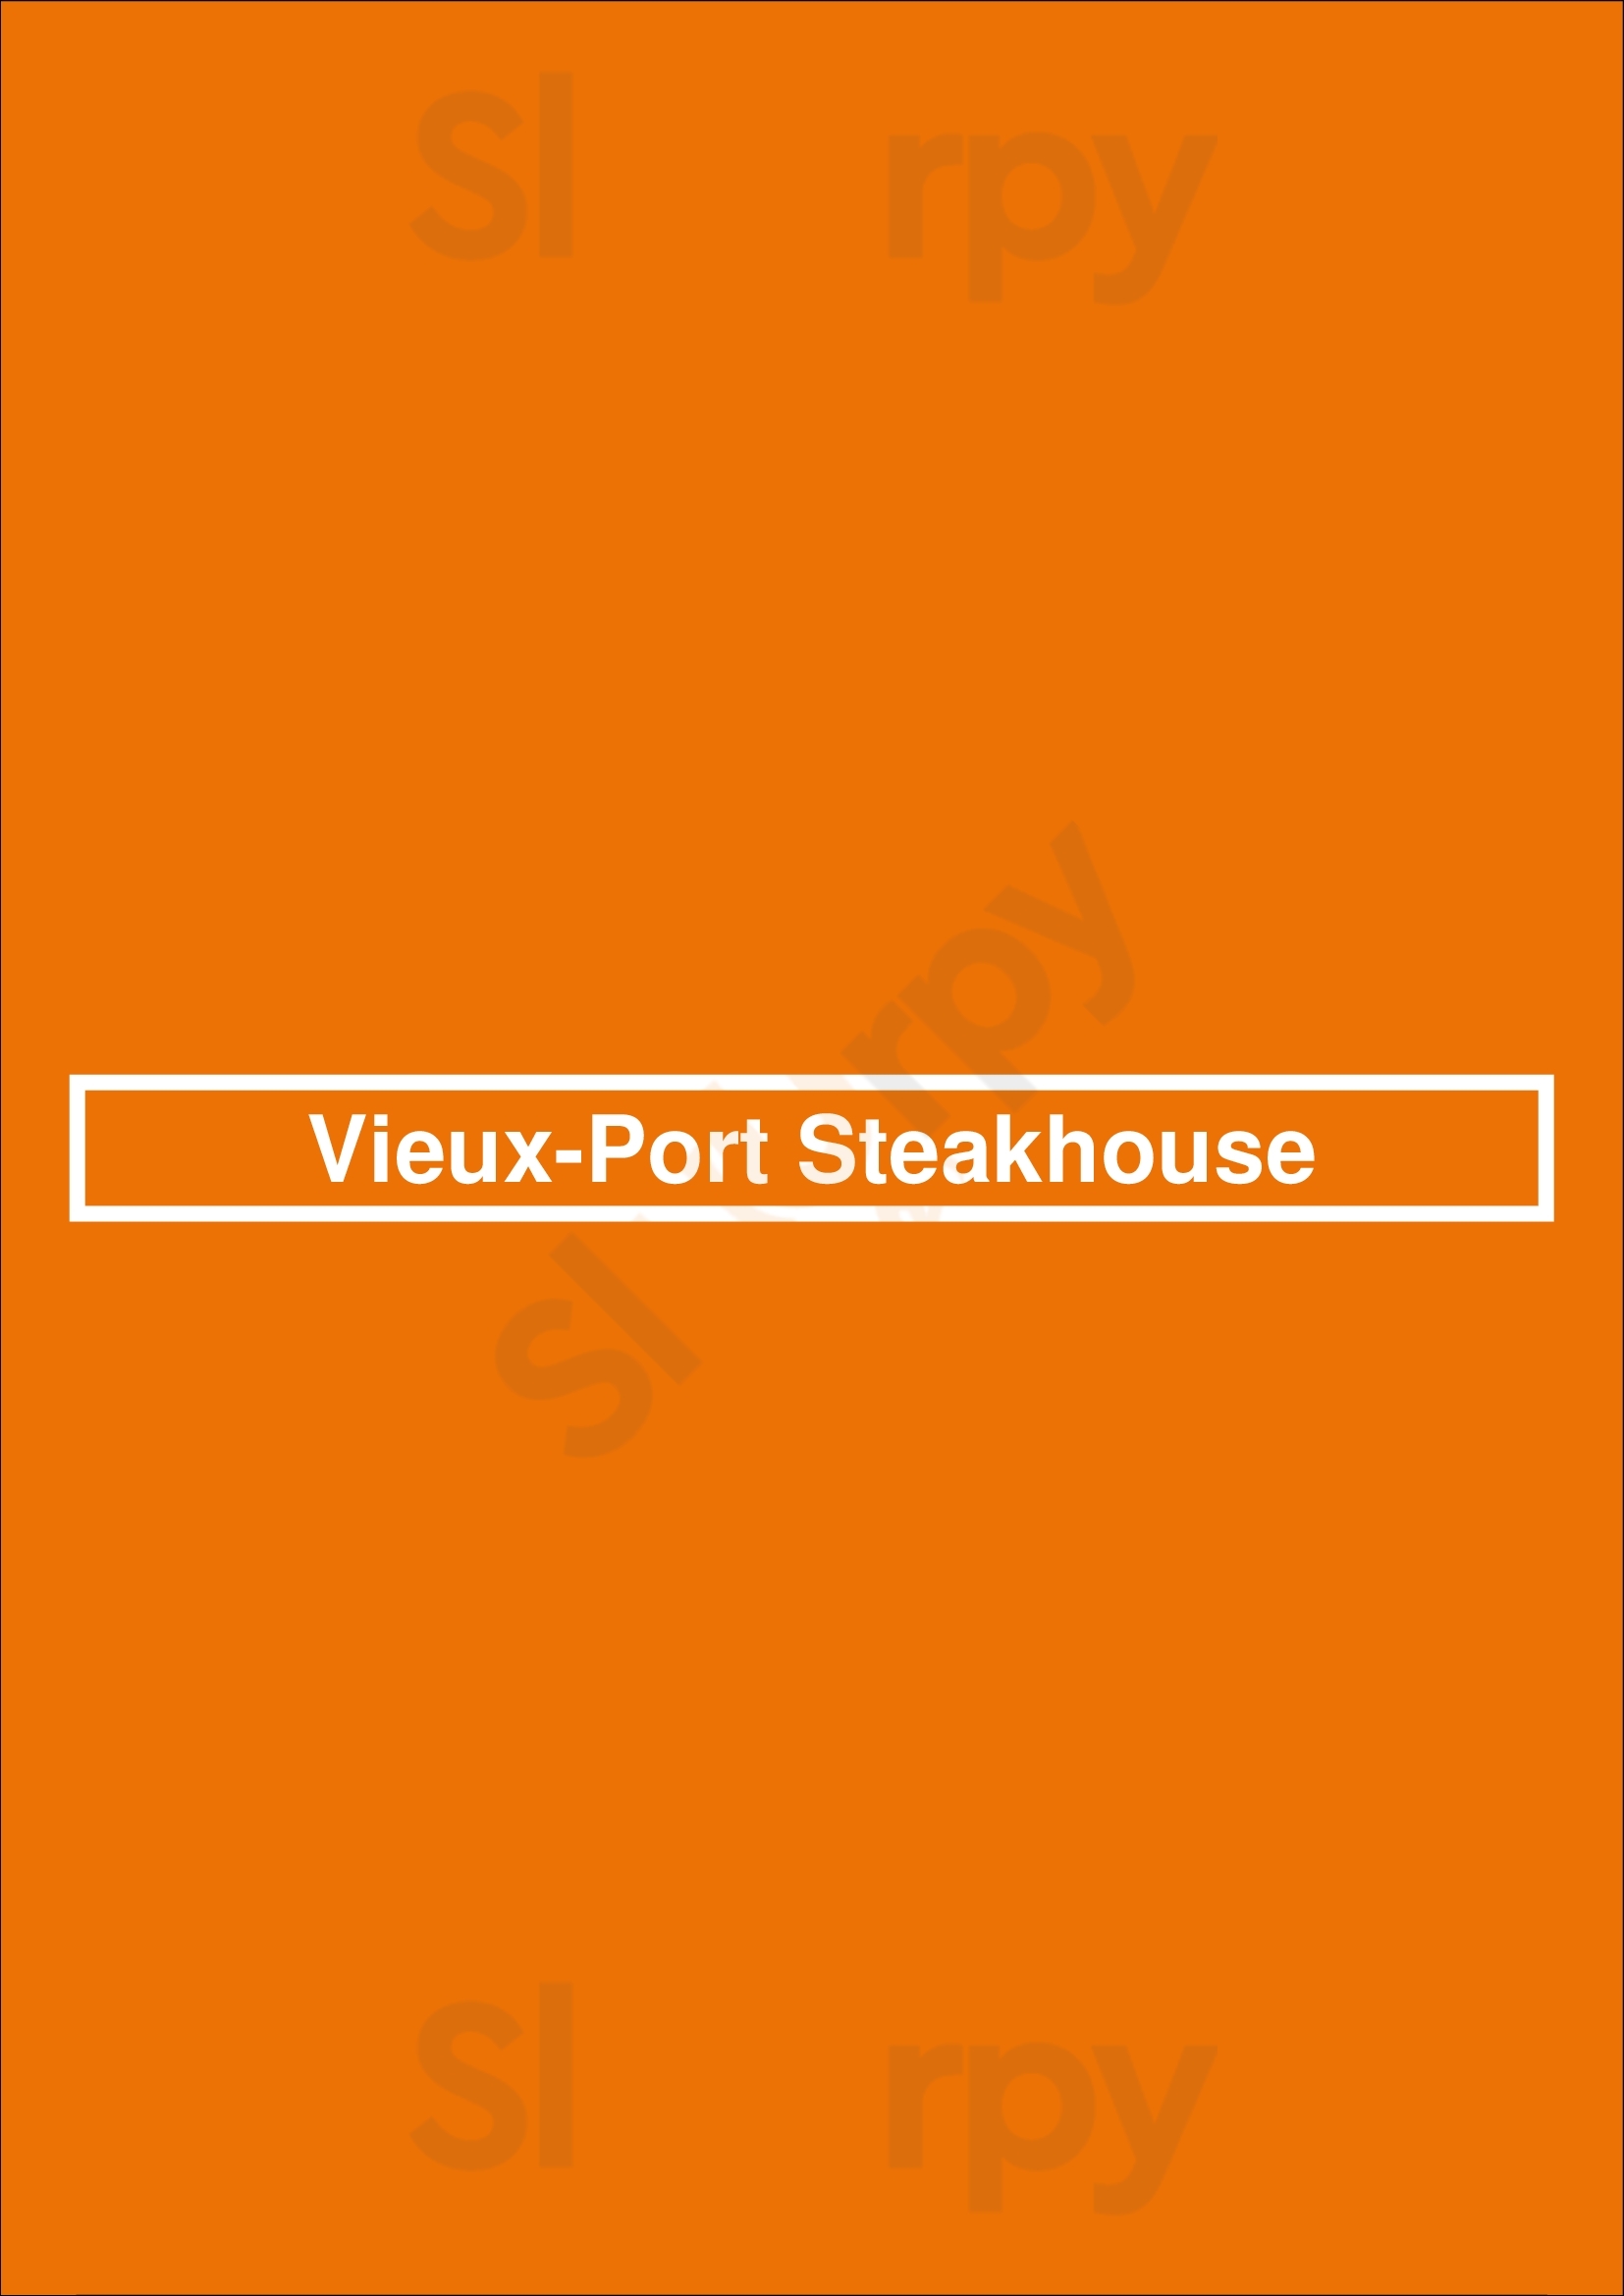 Vieux-port Steakhouse Montreal Menu - 1